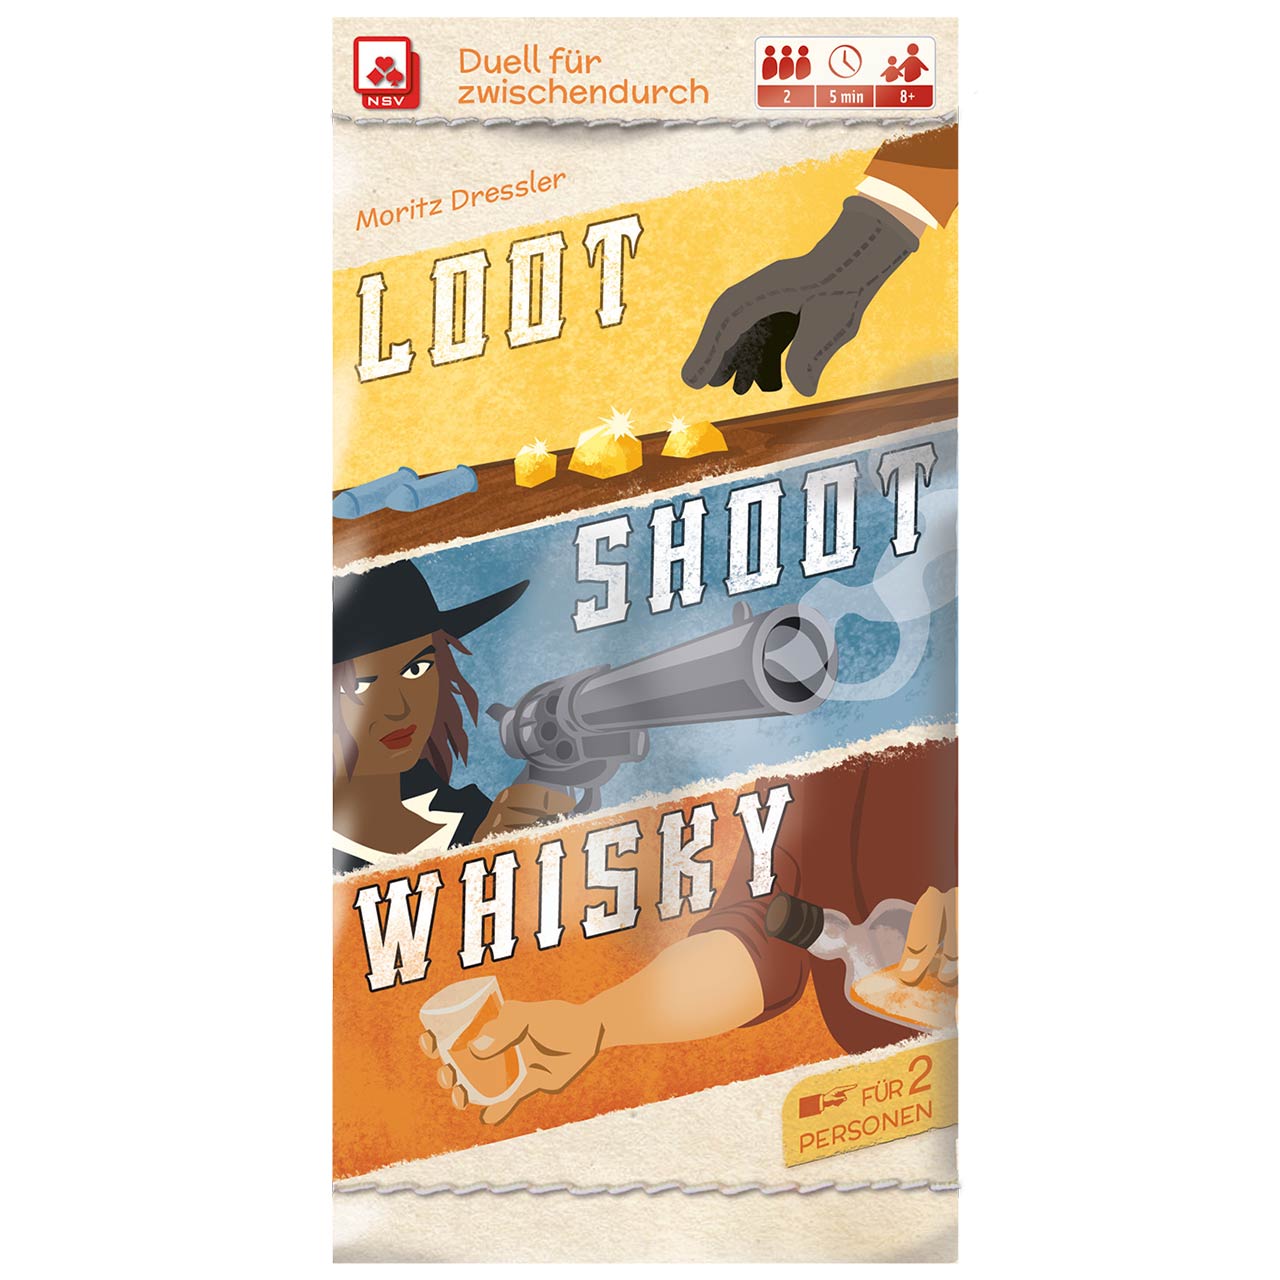 Loot, Shoot, Whisky – Kartenspiel für Erwachsene